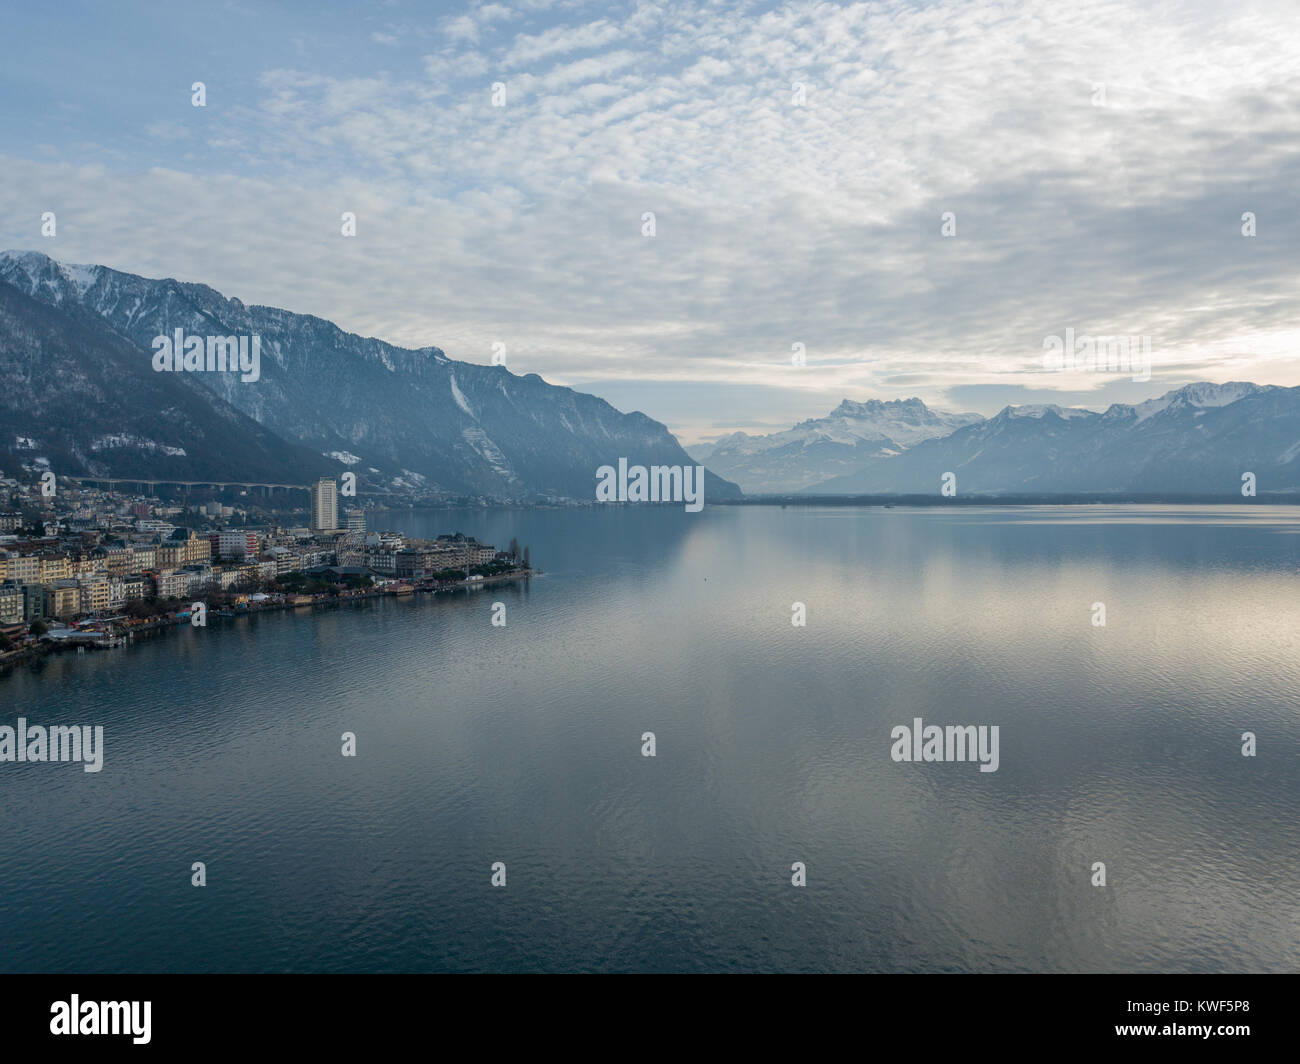 Montreux ist ein traditionelles Resort Stadt in der Schweiz am Ufer des Genfer Sees. Es ist berühmt für seine jährlichen Jazz Festival. Bild von einer Drohne getroffen. Stockfoto